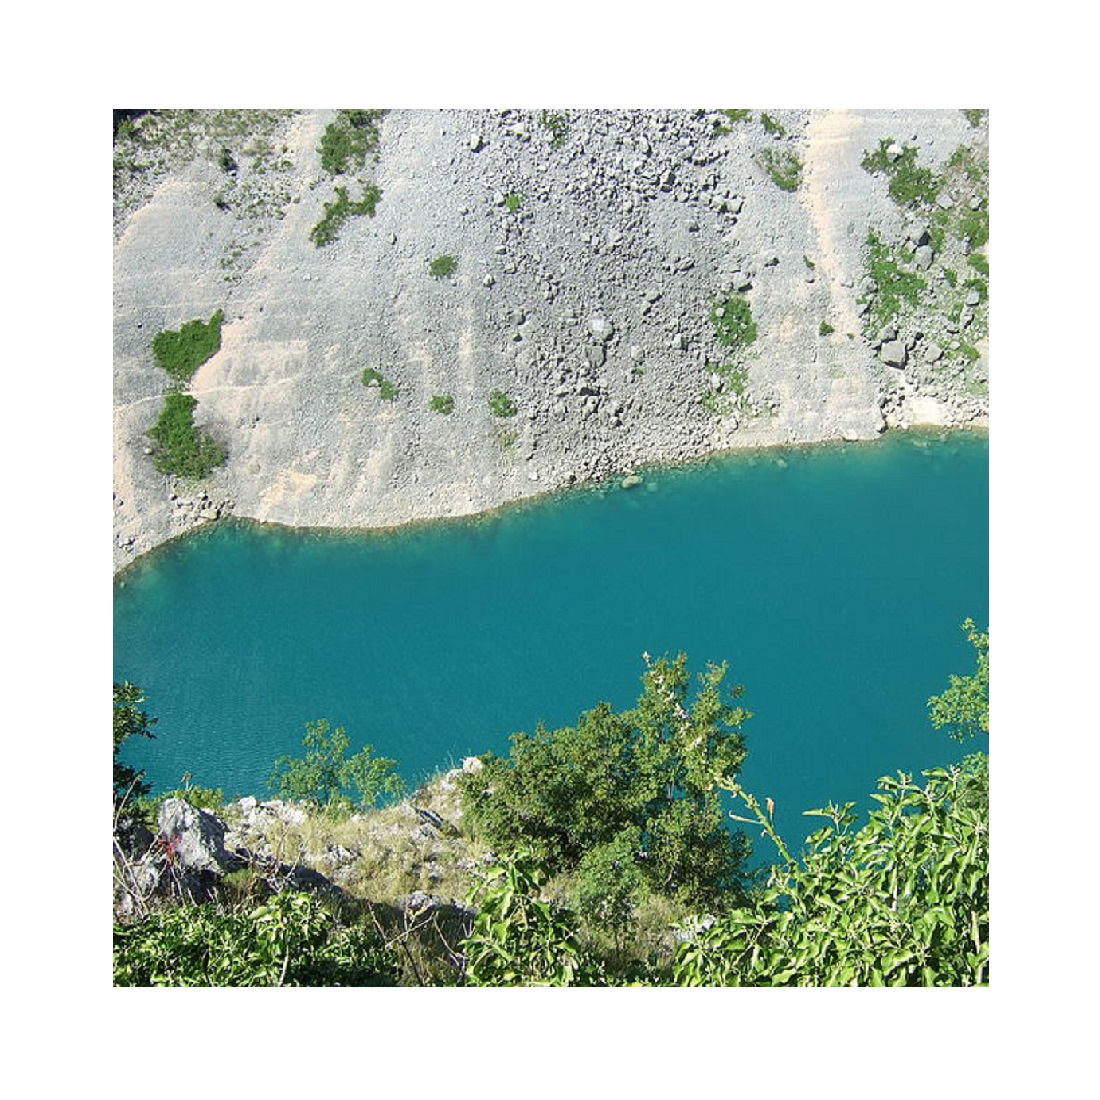 blue lake in croatia 1100